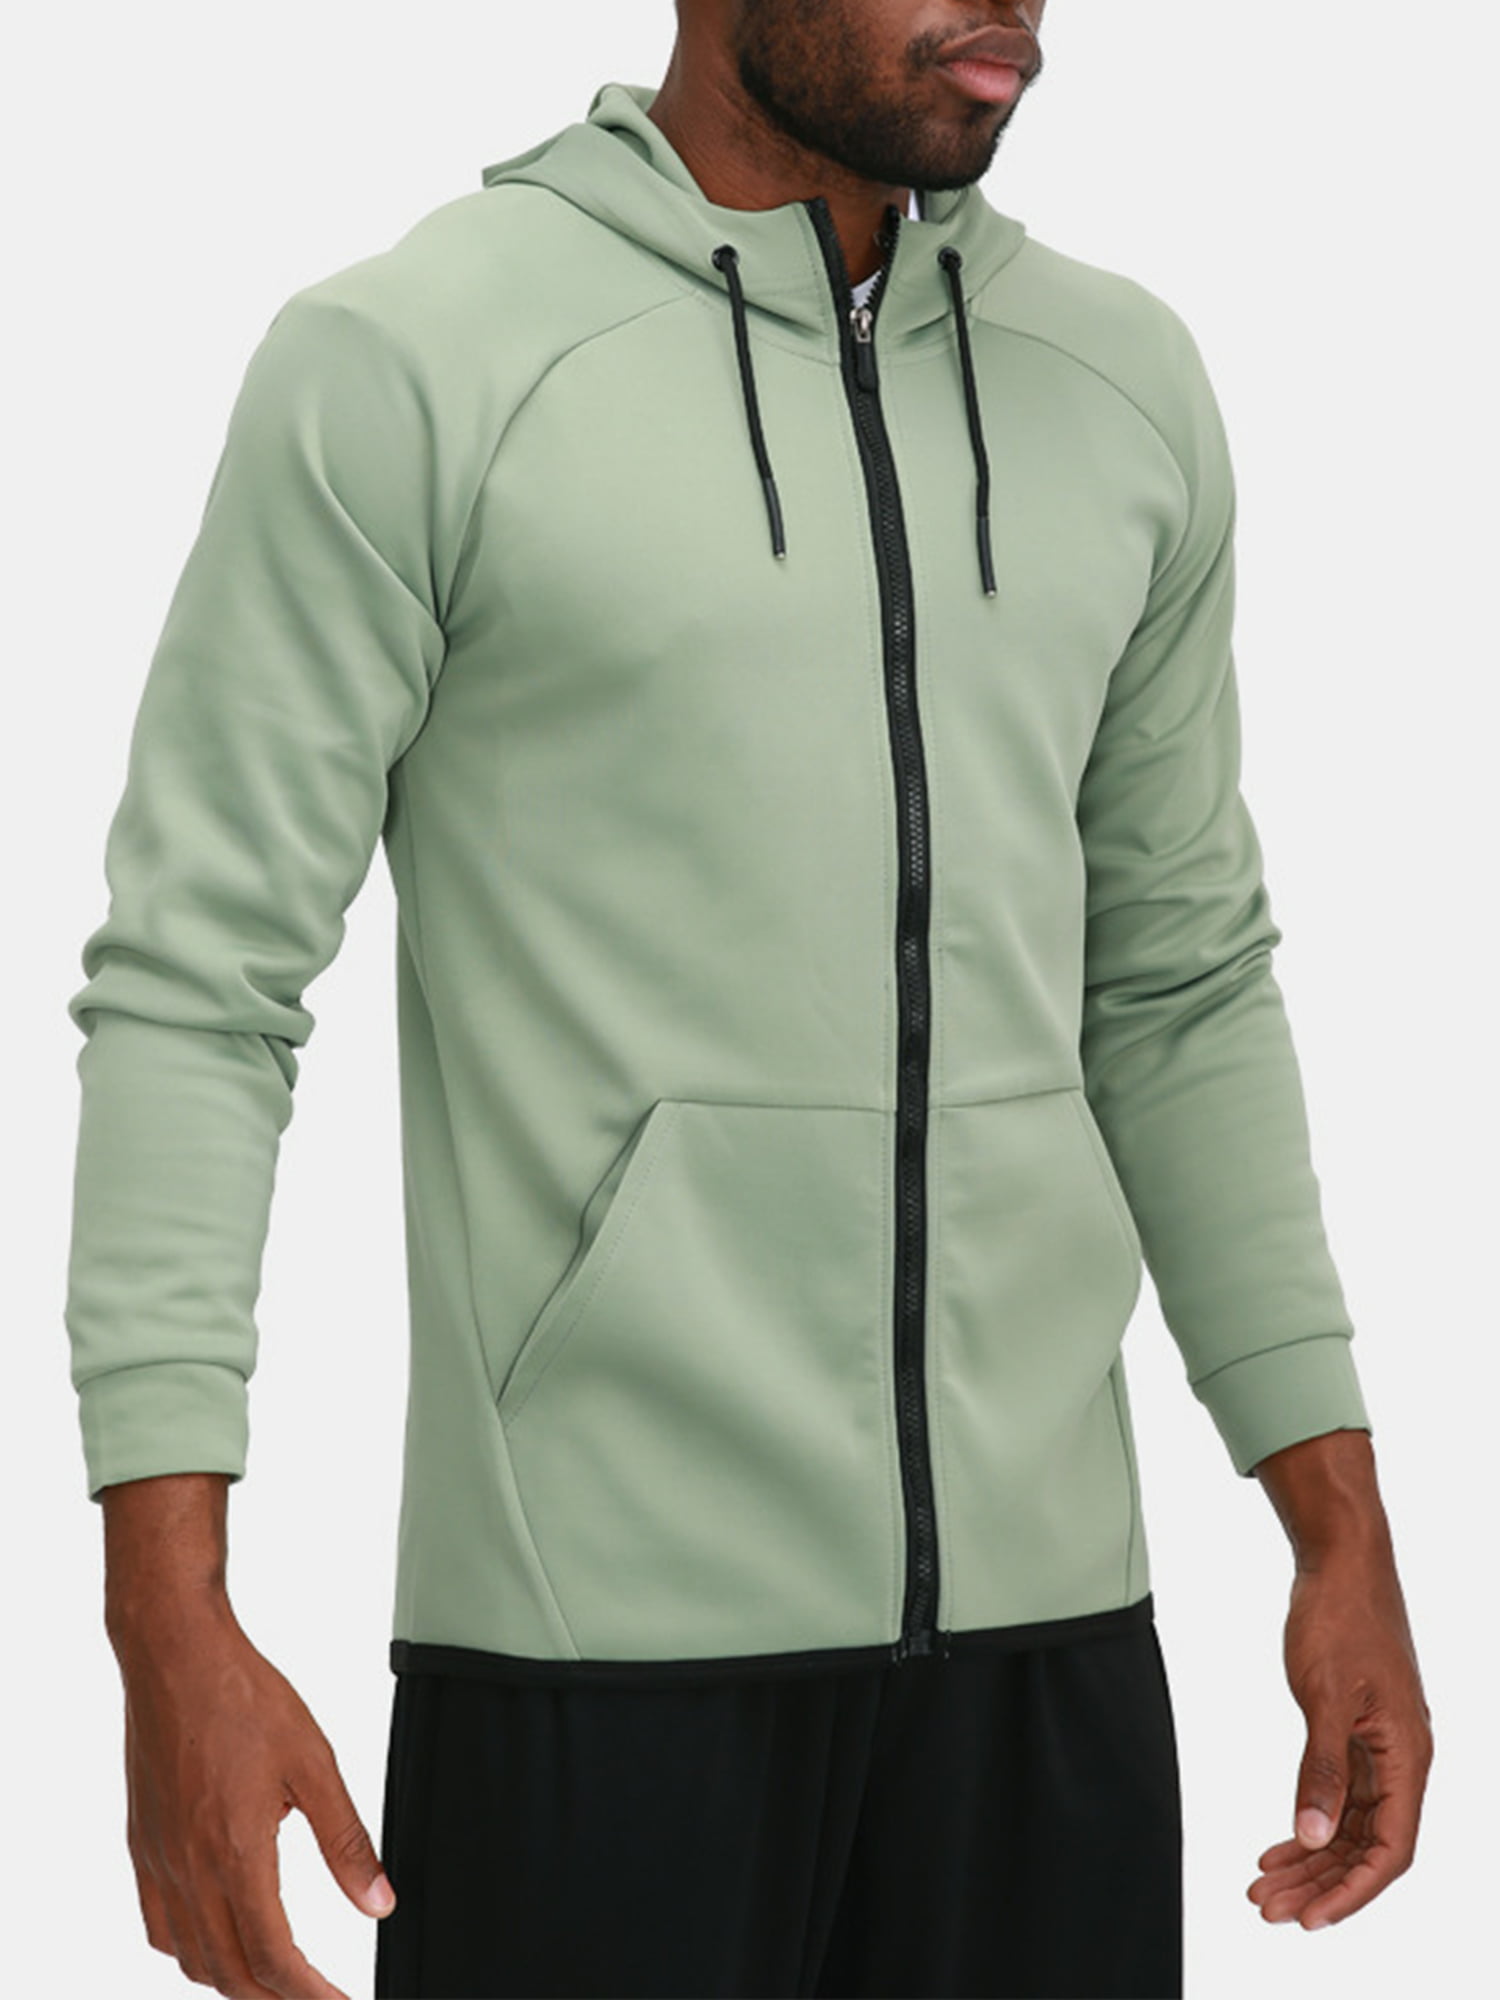 Mens Hoodie Jacket Sweatshirt Hooded Sports Gym Jumper Coat Casual Zip Up Tops 